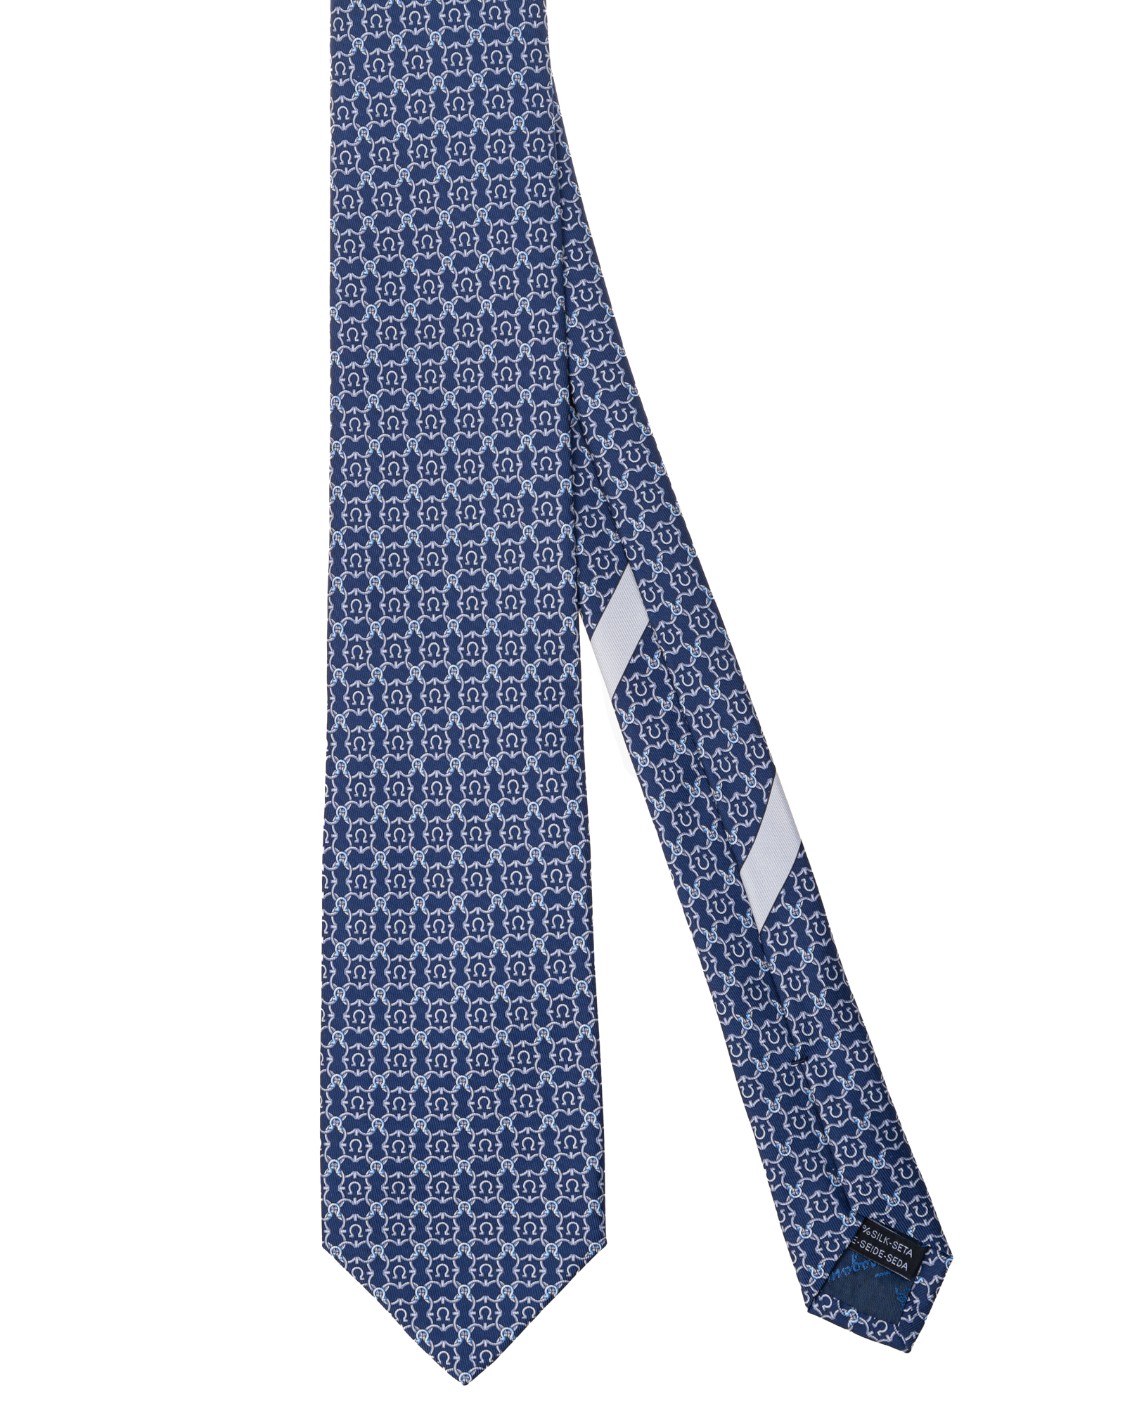 shop SALVATORE FERRAGAMO  Cravatta: Salvatore Ferragamo cravatta in jacquard di seta.
Decorata da un pattern geometrico formati dai "gancini".
Fondo a 7 cm.
Composizione: 100% seta.
Made in Italy.. 350499 4 OPERA-001 749967 number 1649618